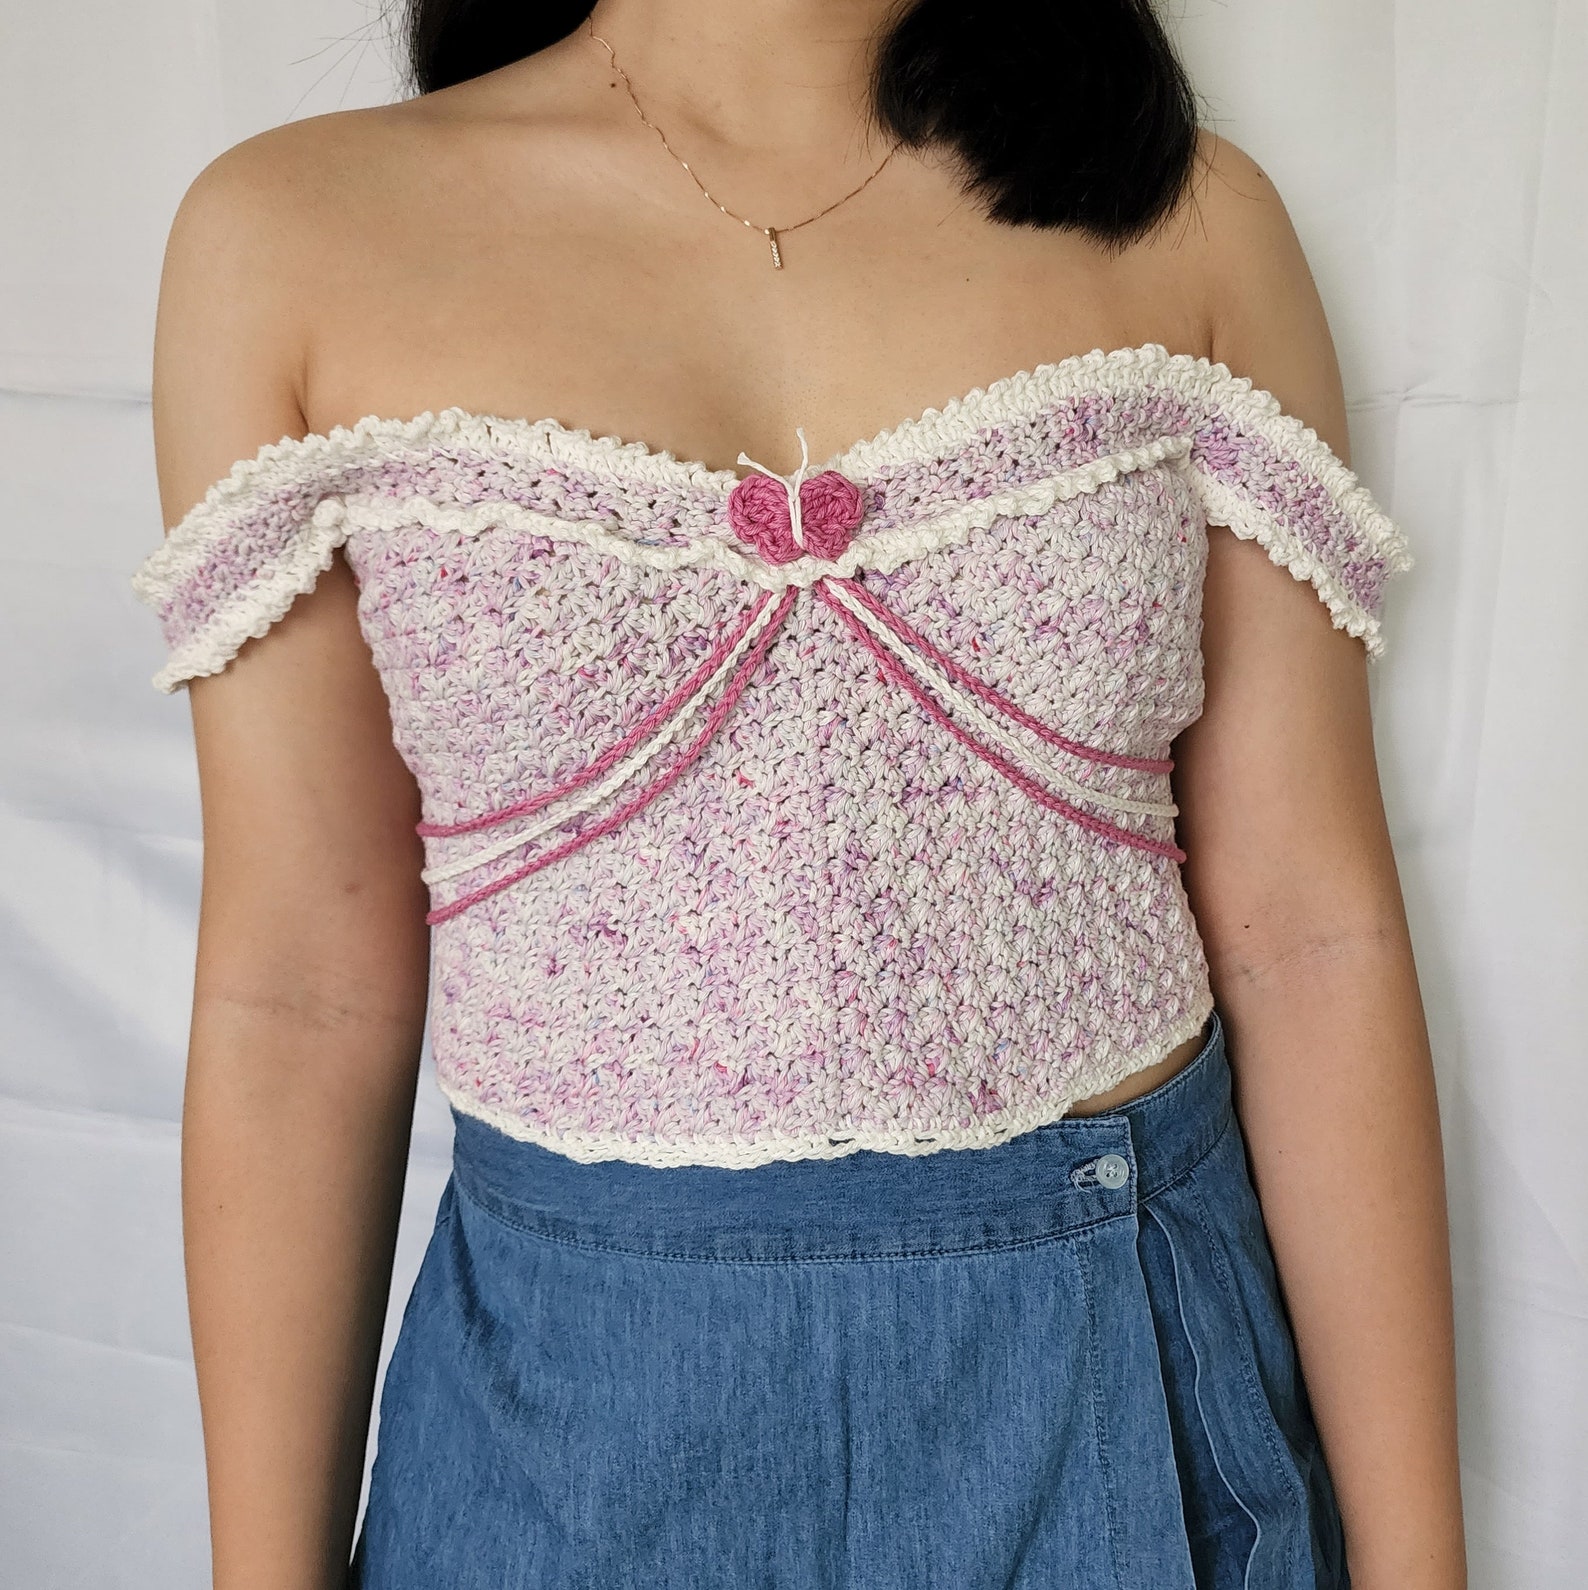 Tiana Top Crochet Written Pattern PDF Only - Etsy